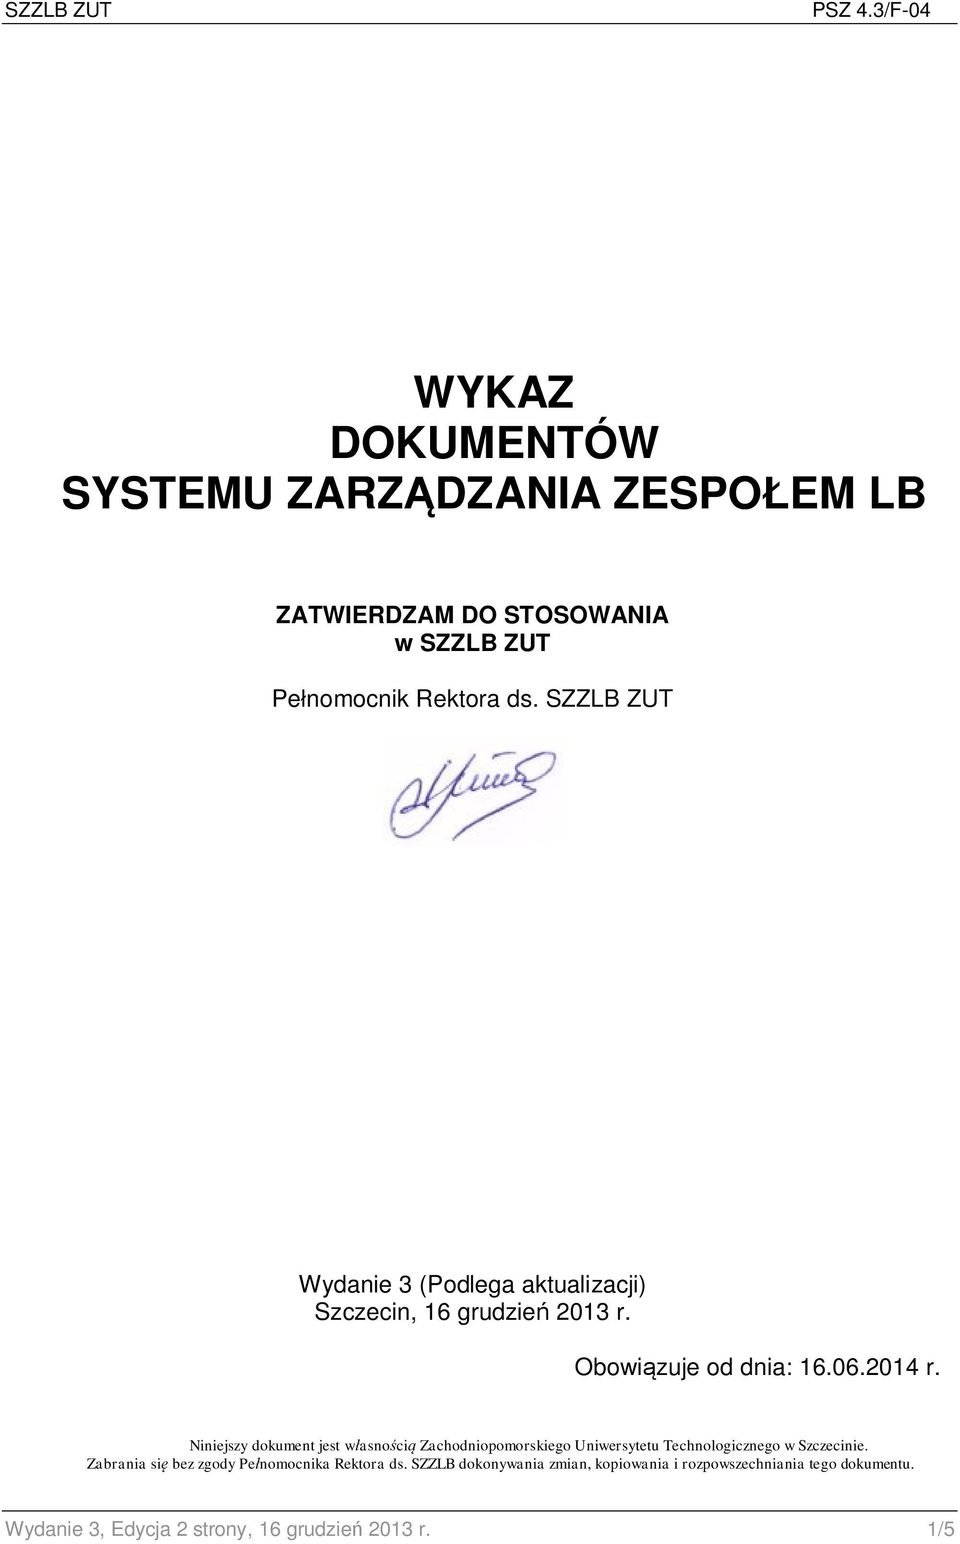 SZZLB ZUT Wydanie 3 (Podlega aktualizacji) Szczecin, 16 grudzień 2013 r. Obowiązuje od dnia: 16.06.2014 r.